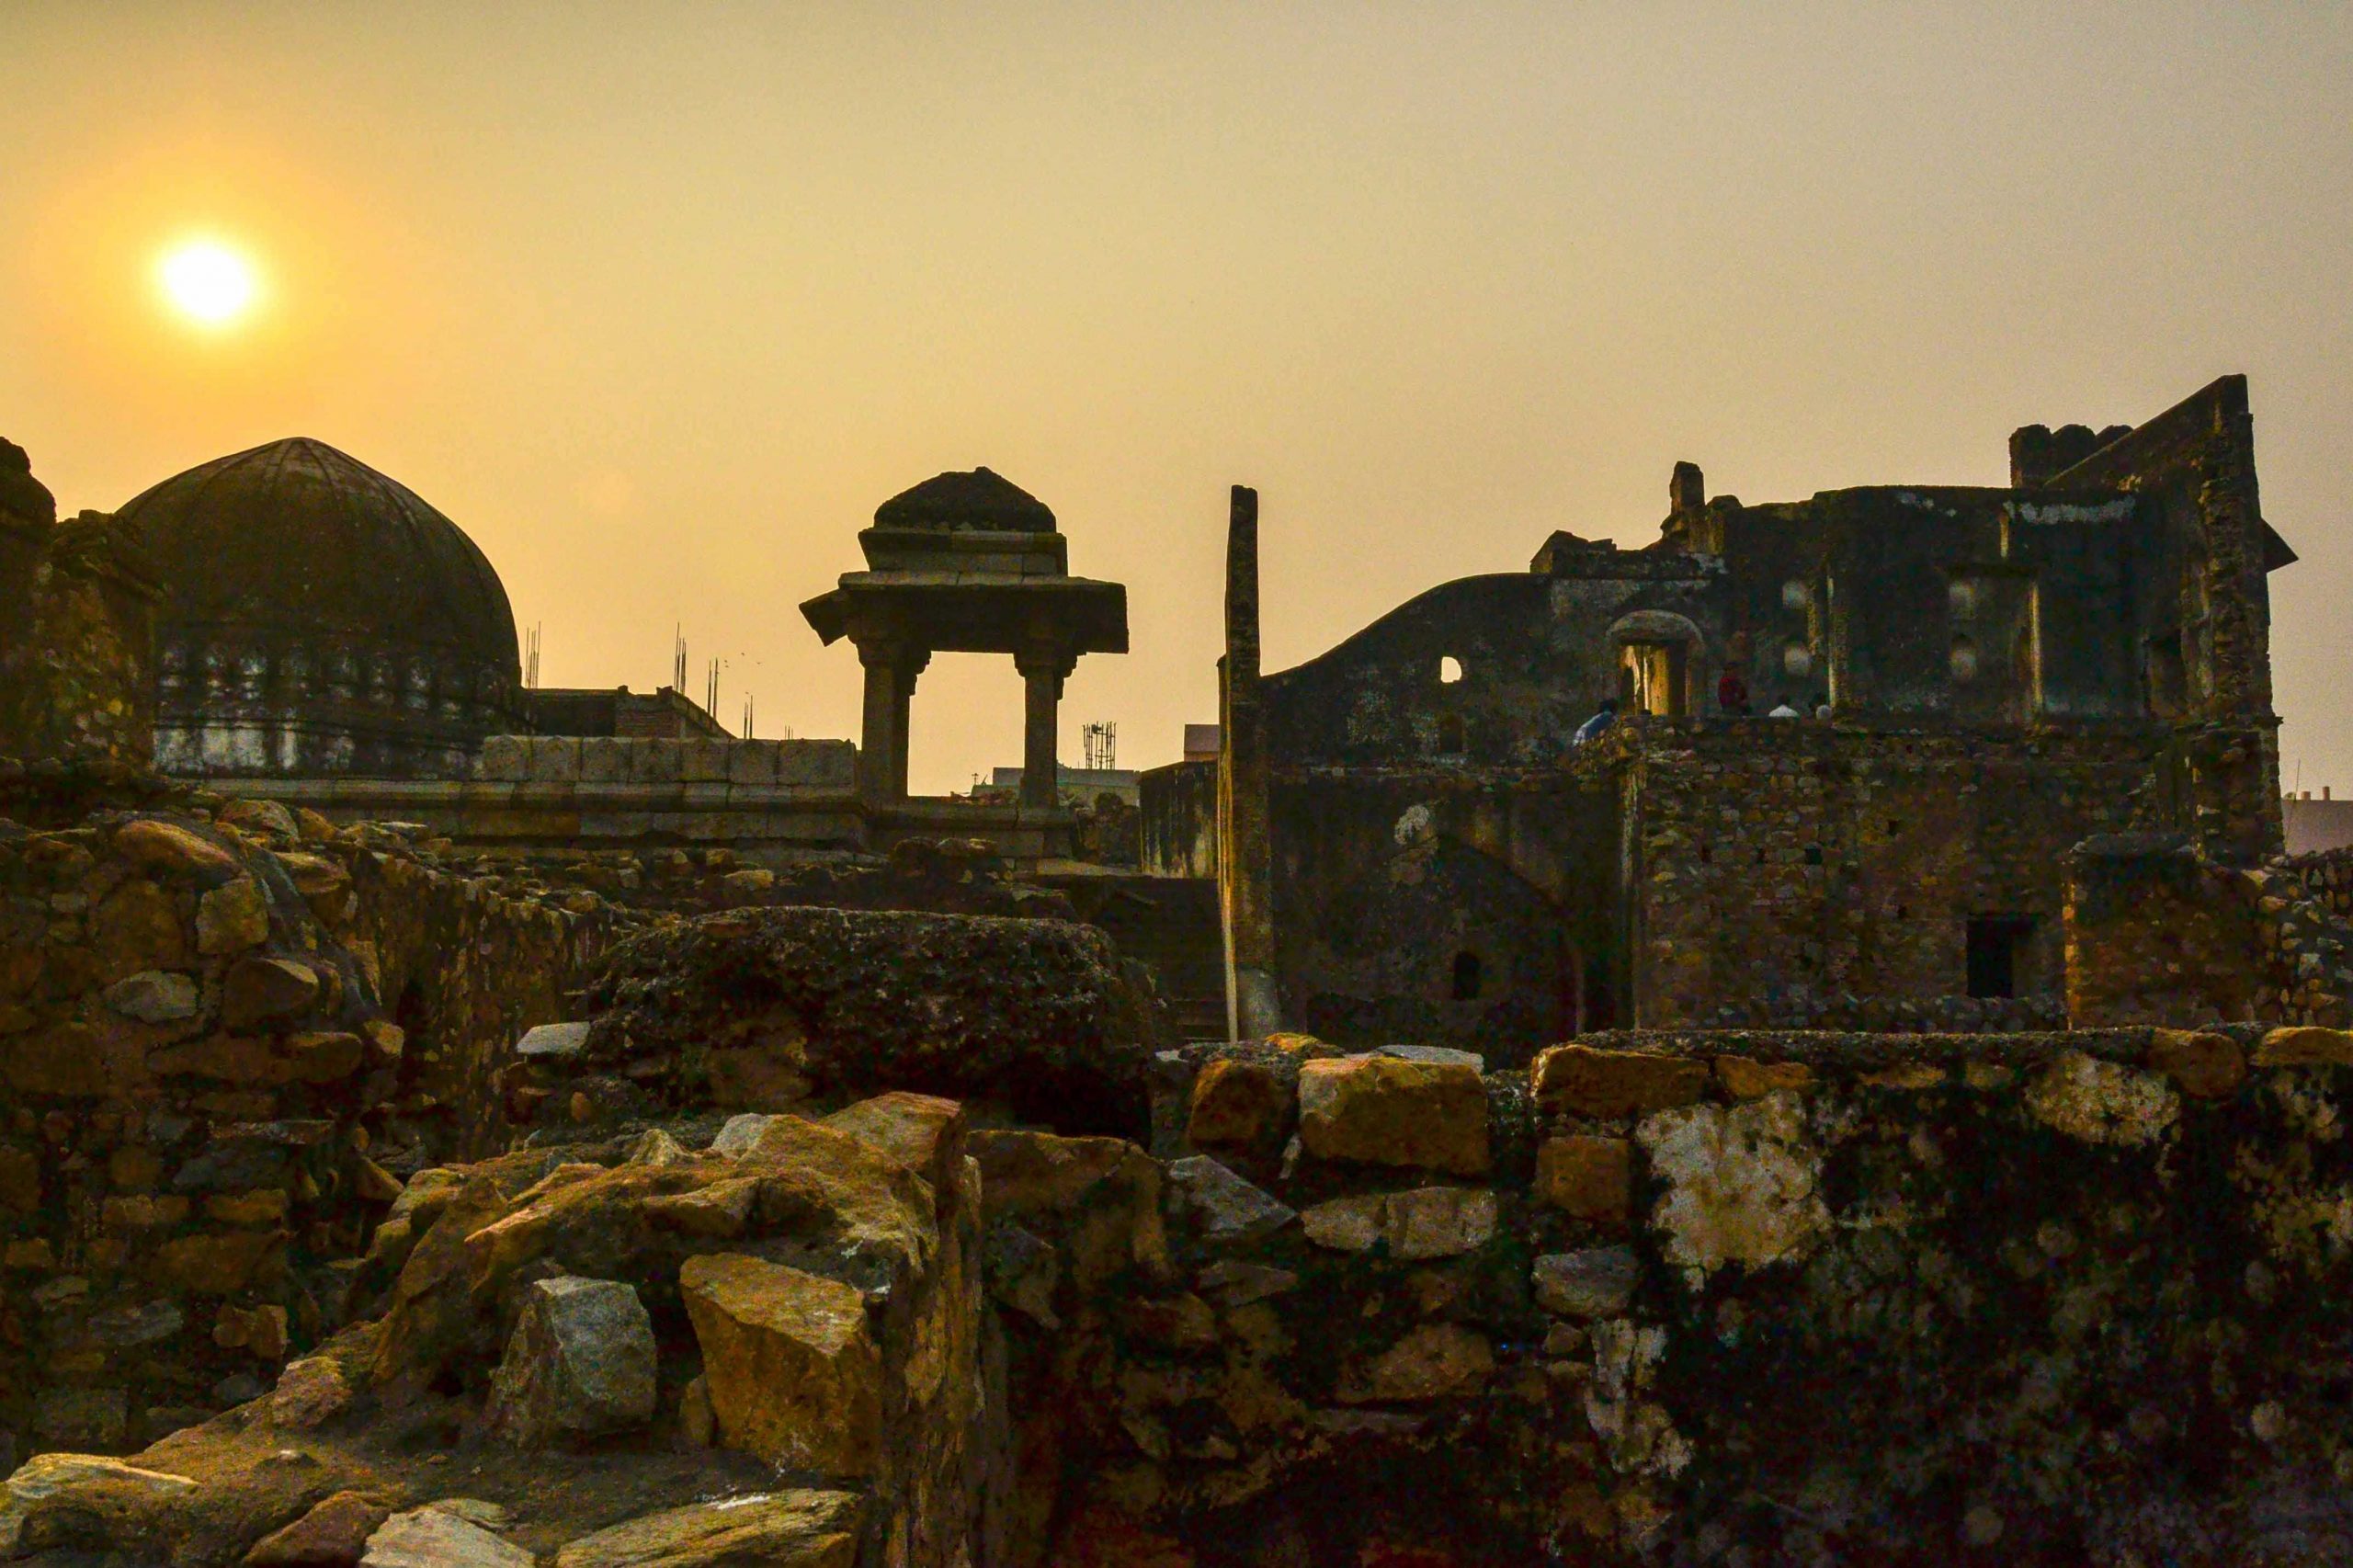 The Forgotten Zafar Mahal in Mehrauli, Delhi